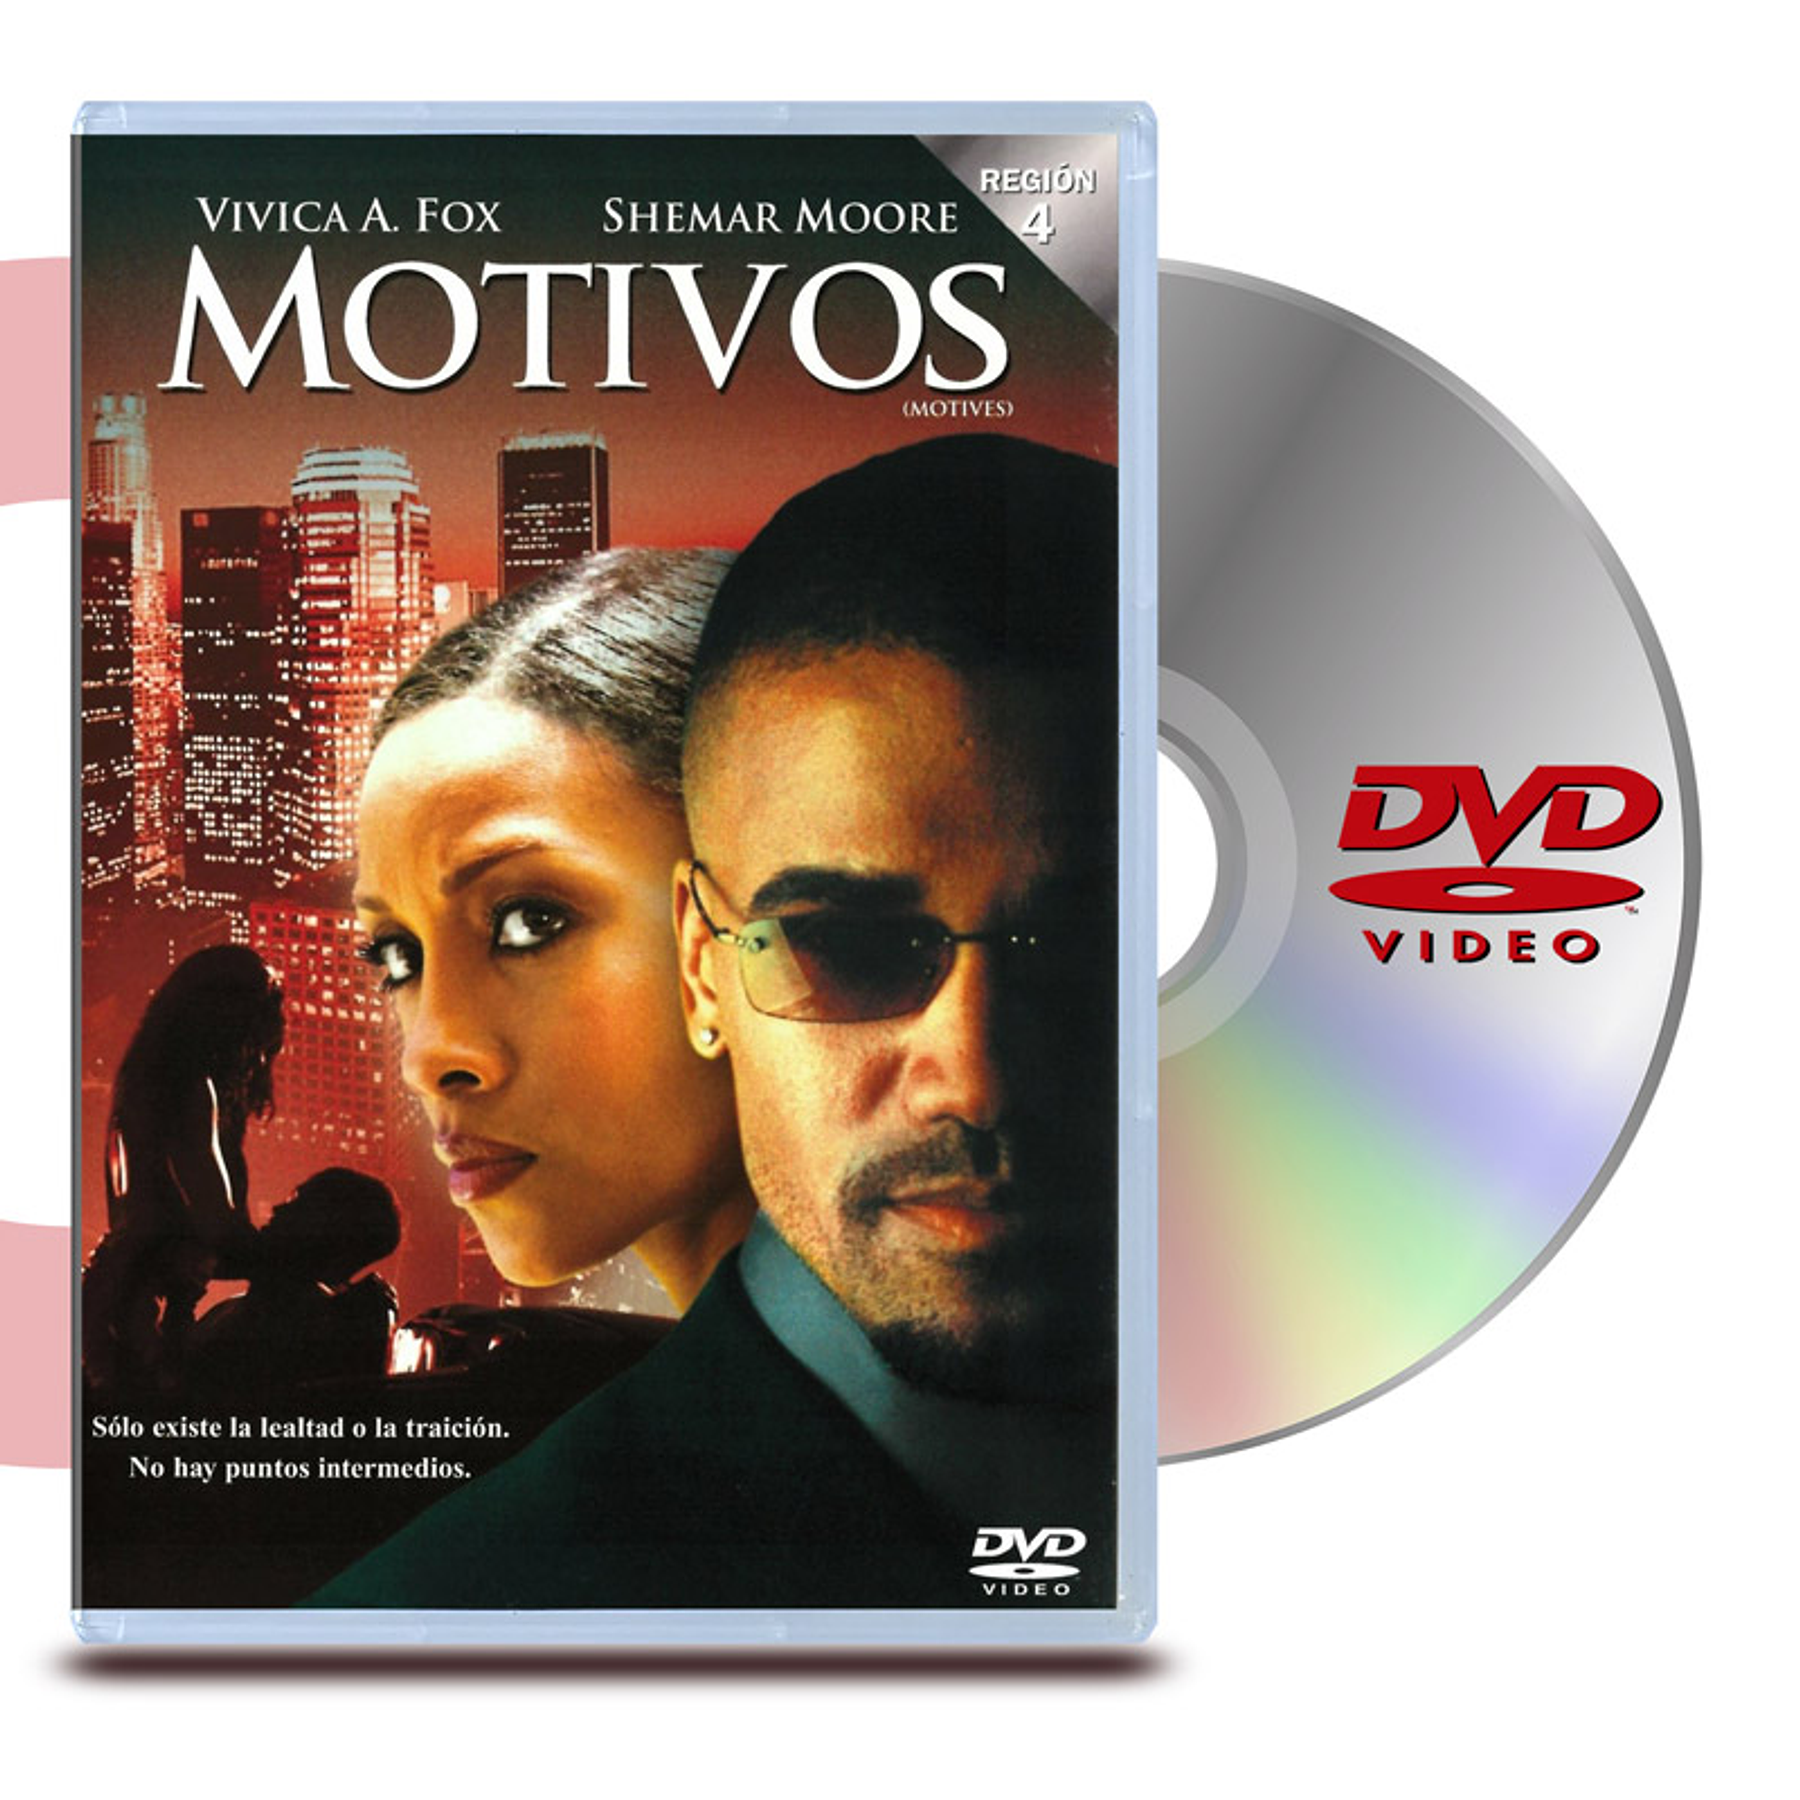 DVD TROIS: MOTIVOS